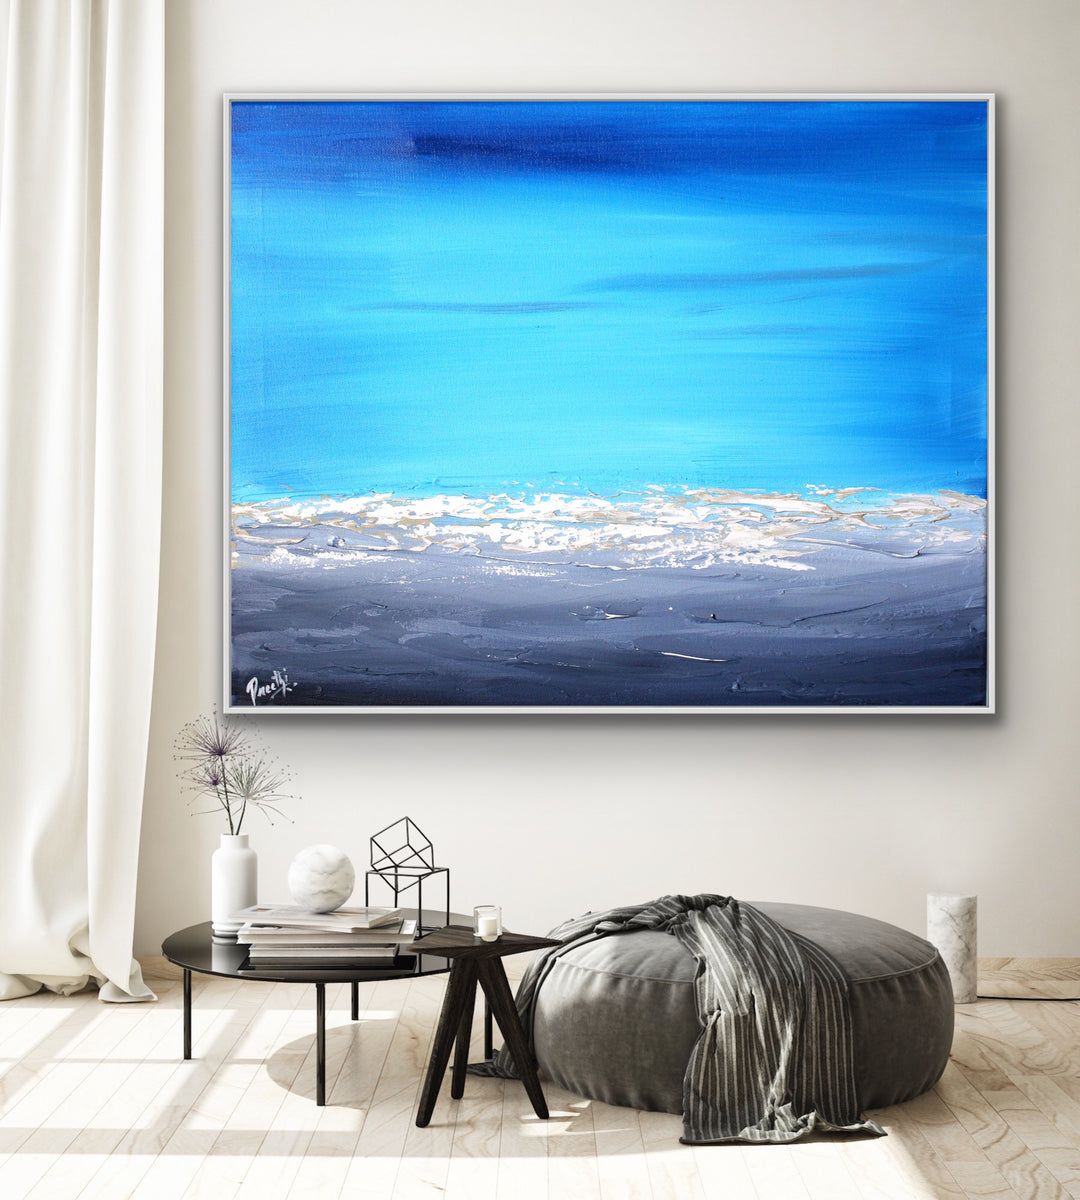 Ocean Blue 3 - Custom Art - Coastal art, seascape painting, Abstract painting, Minimalist Art, Framed painting, Wall Art, Modern Wall Decor, Large painting, Local Artist